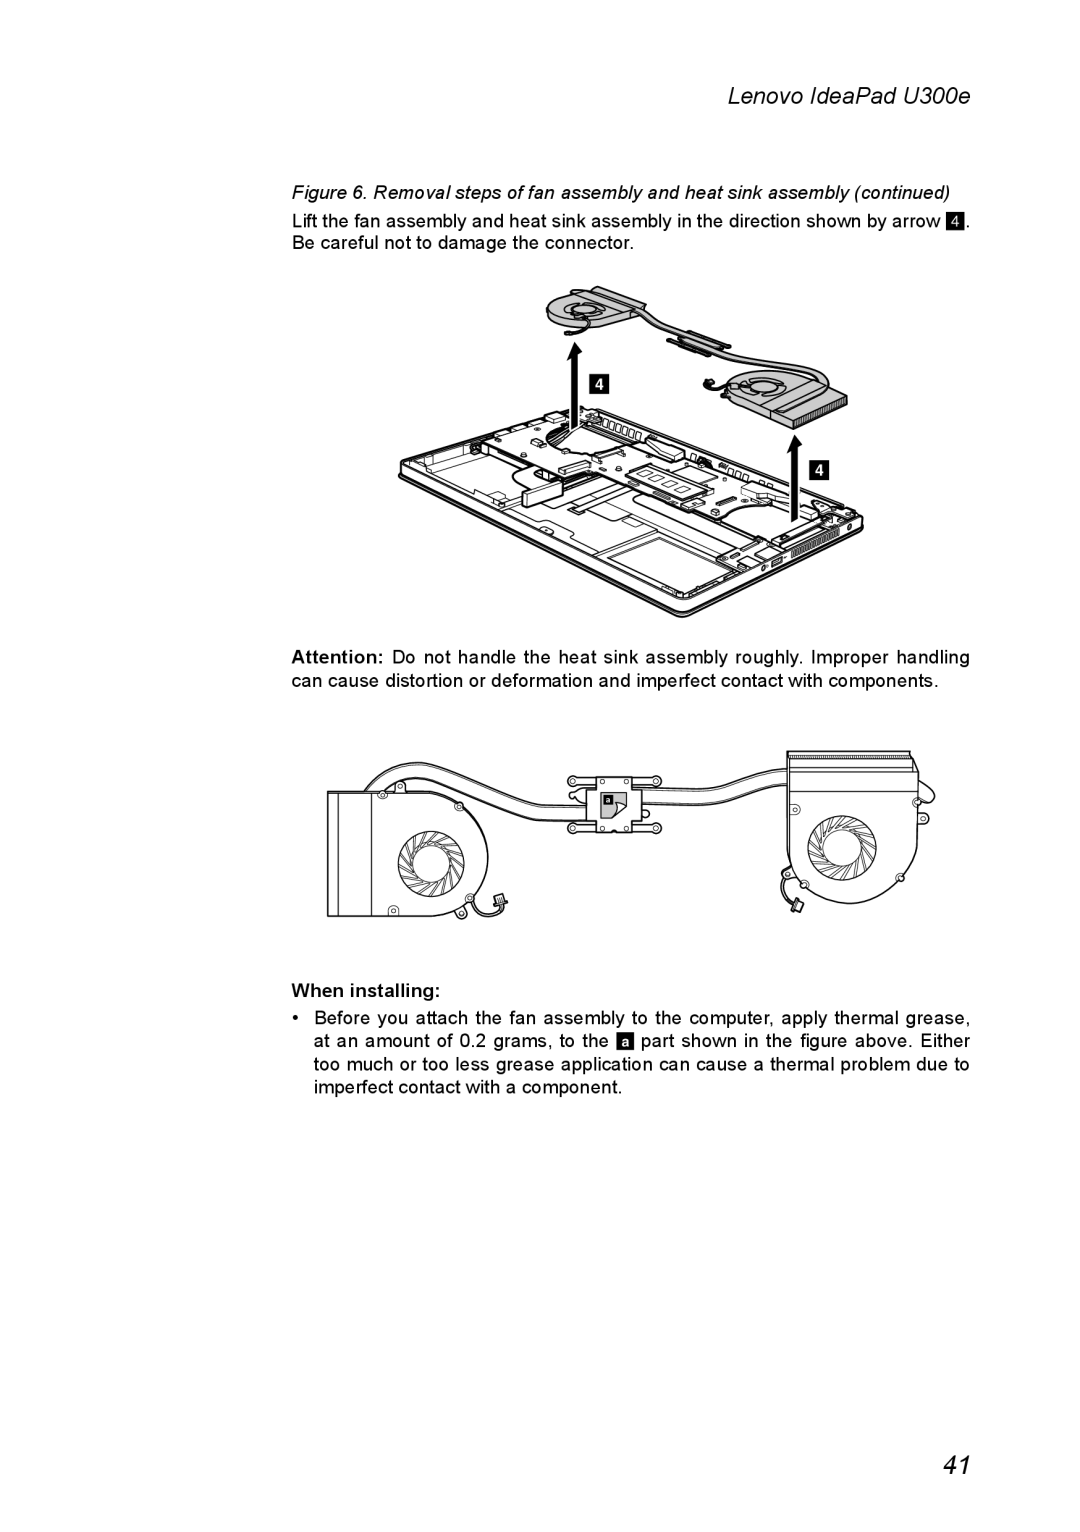 Lenovo U300E manual Lenovo IdeaPad U300e, When installing 